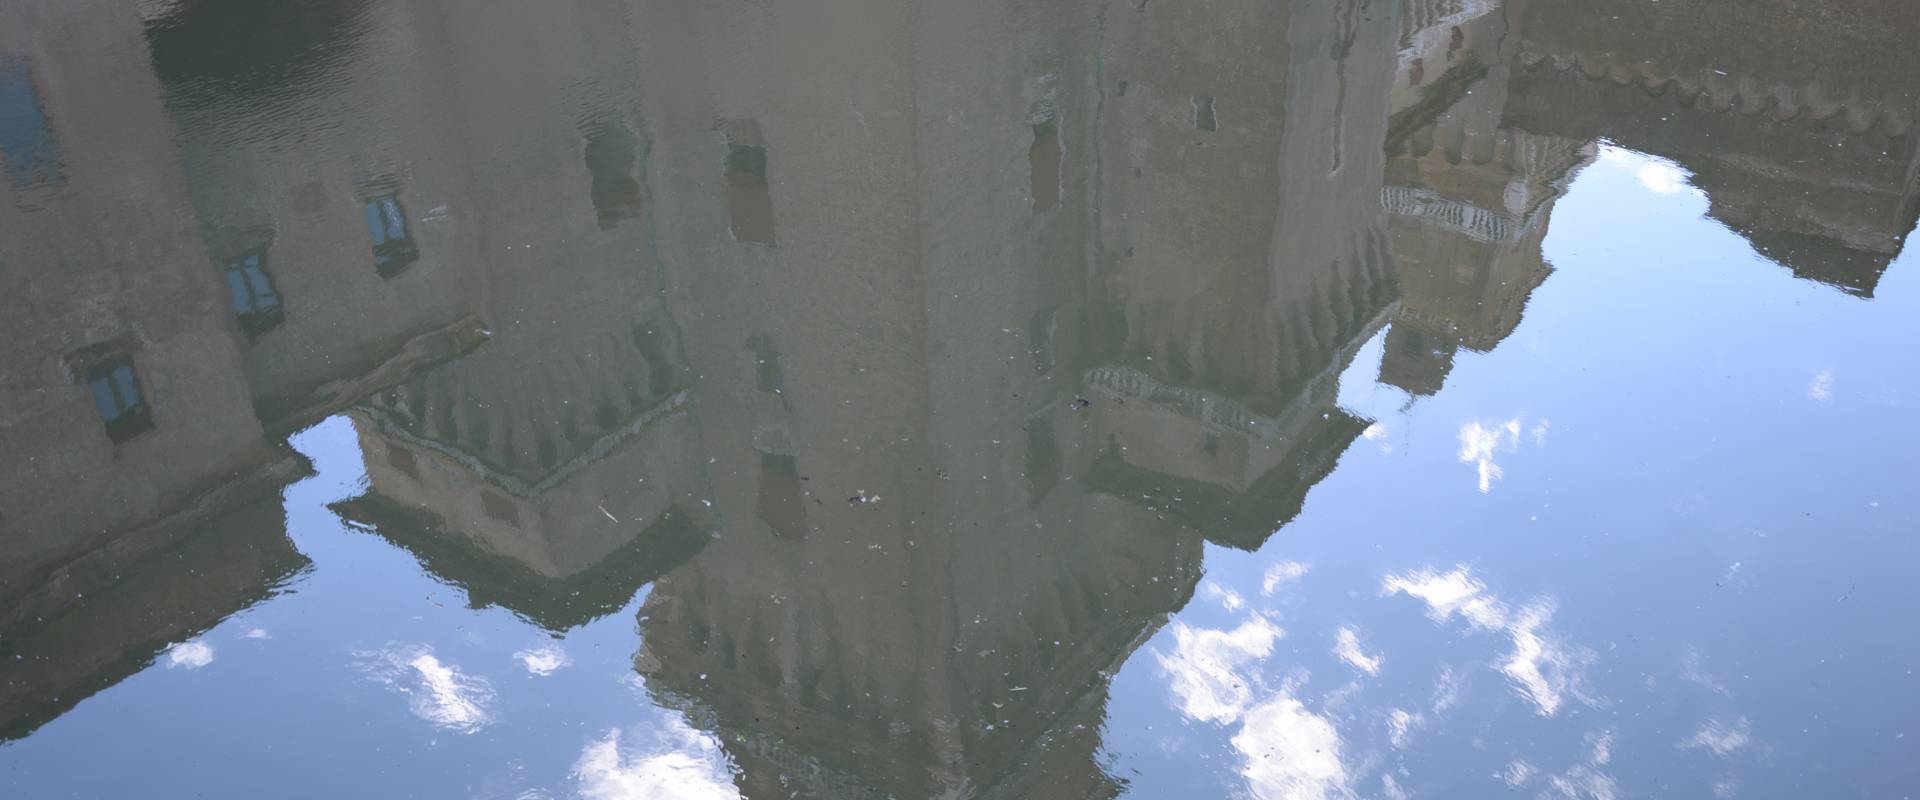 Castello Estense riflesso nel fossato foto di Tommaso Trombetta